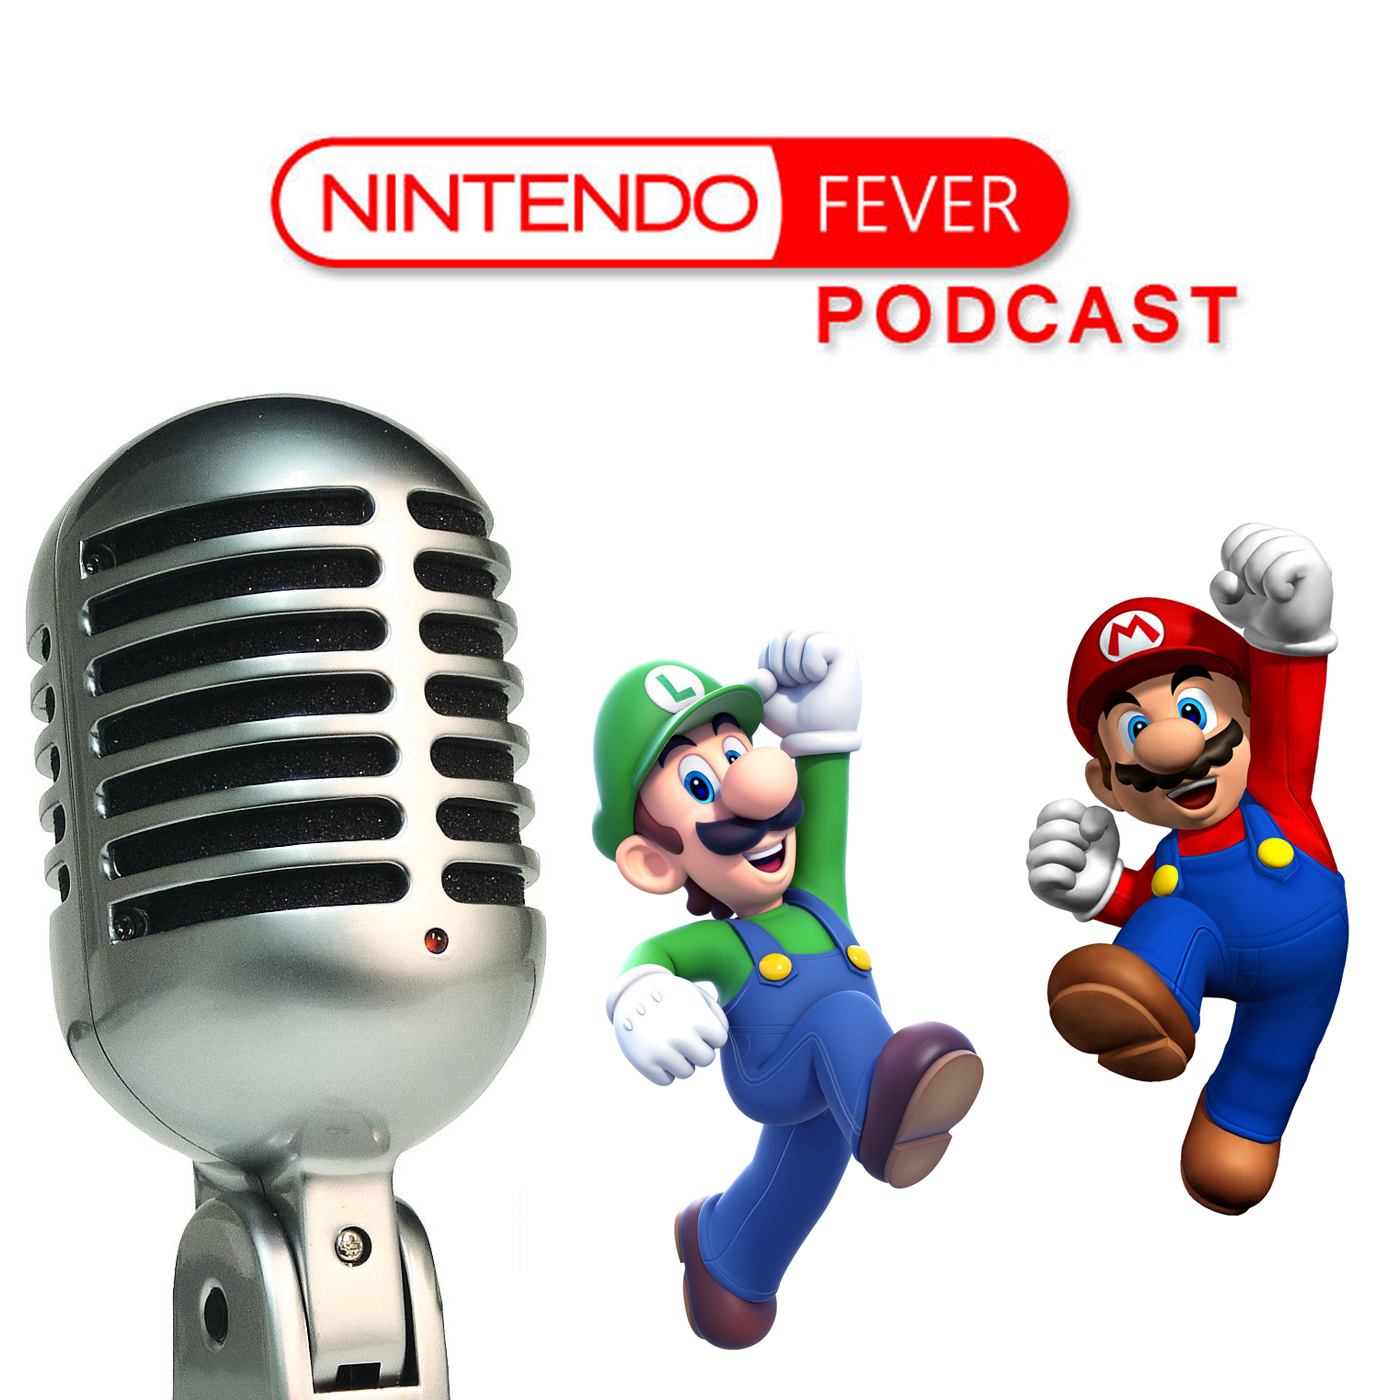 NintendoFever Podcast Episode 97: We’re Back!